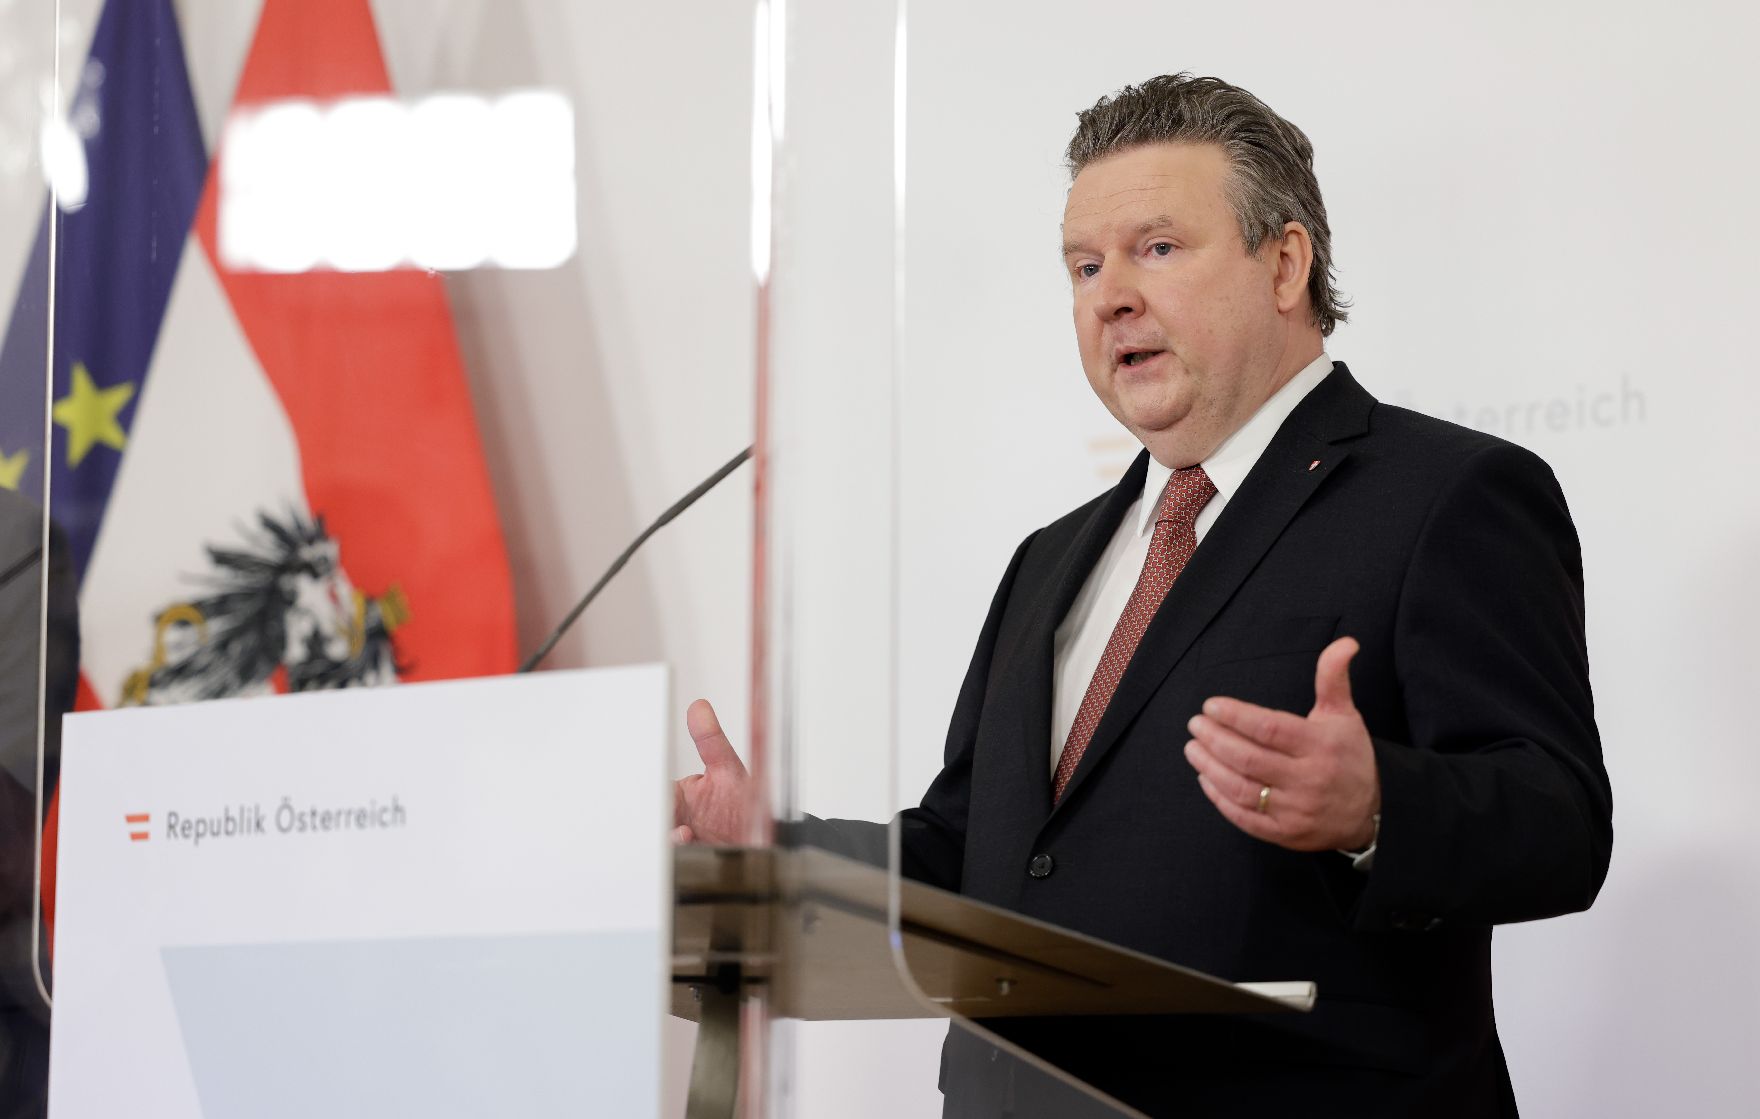 Am 24. März 2021 fand ein Pressestatement zu den Maßnahmen gegen die Krise im Bundeskanzleramt statt. Im Bild Bürgermeister Michael Ludwig.